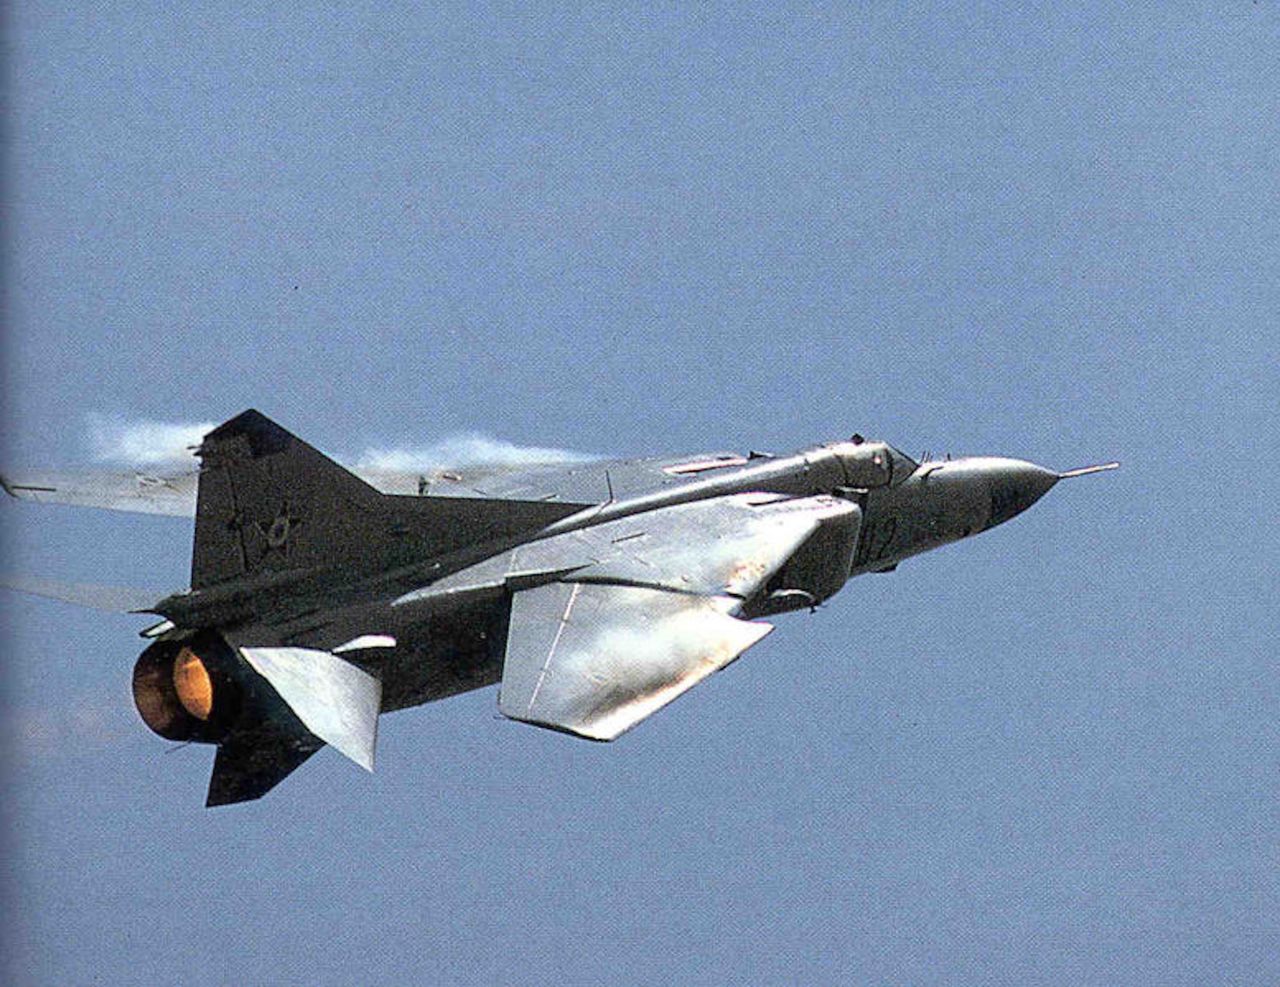 MiG-23 ze złożonymi skrzydłami